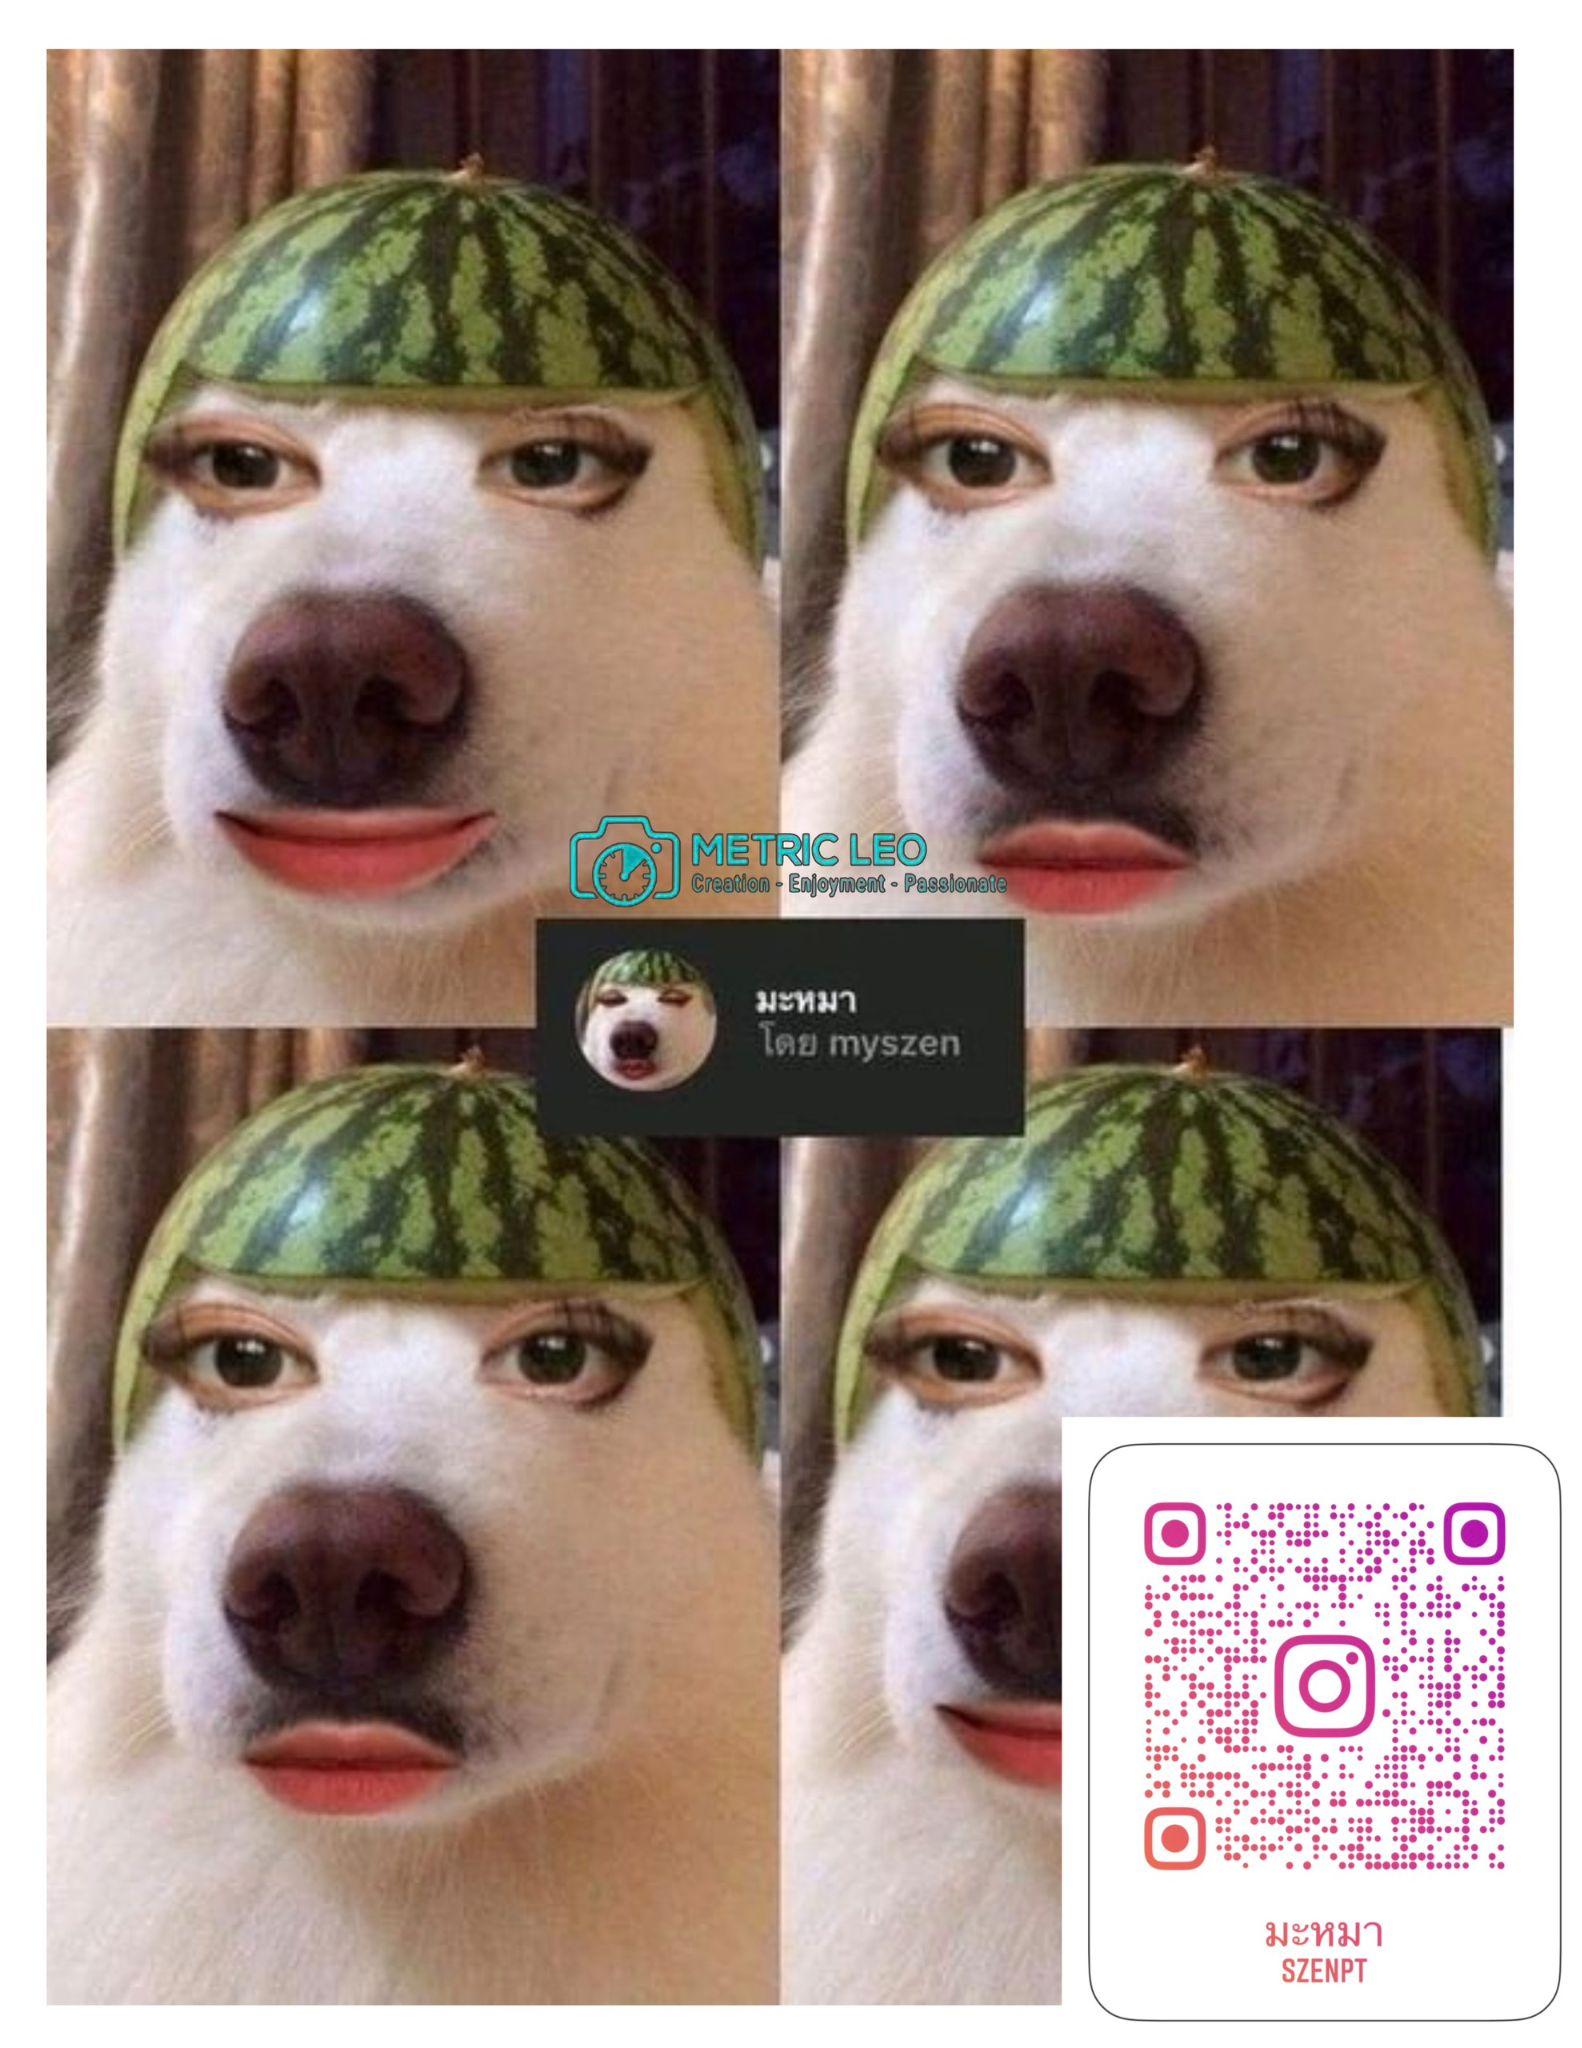 Scan mã QR để sử dụng thử filter trên Instagram